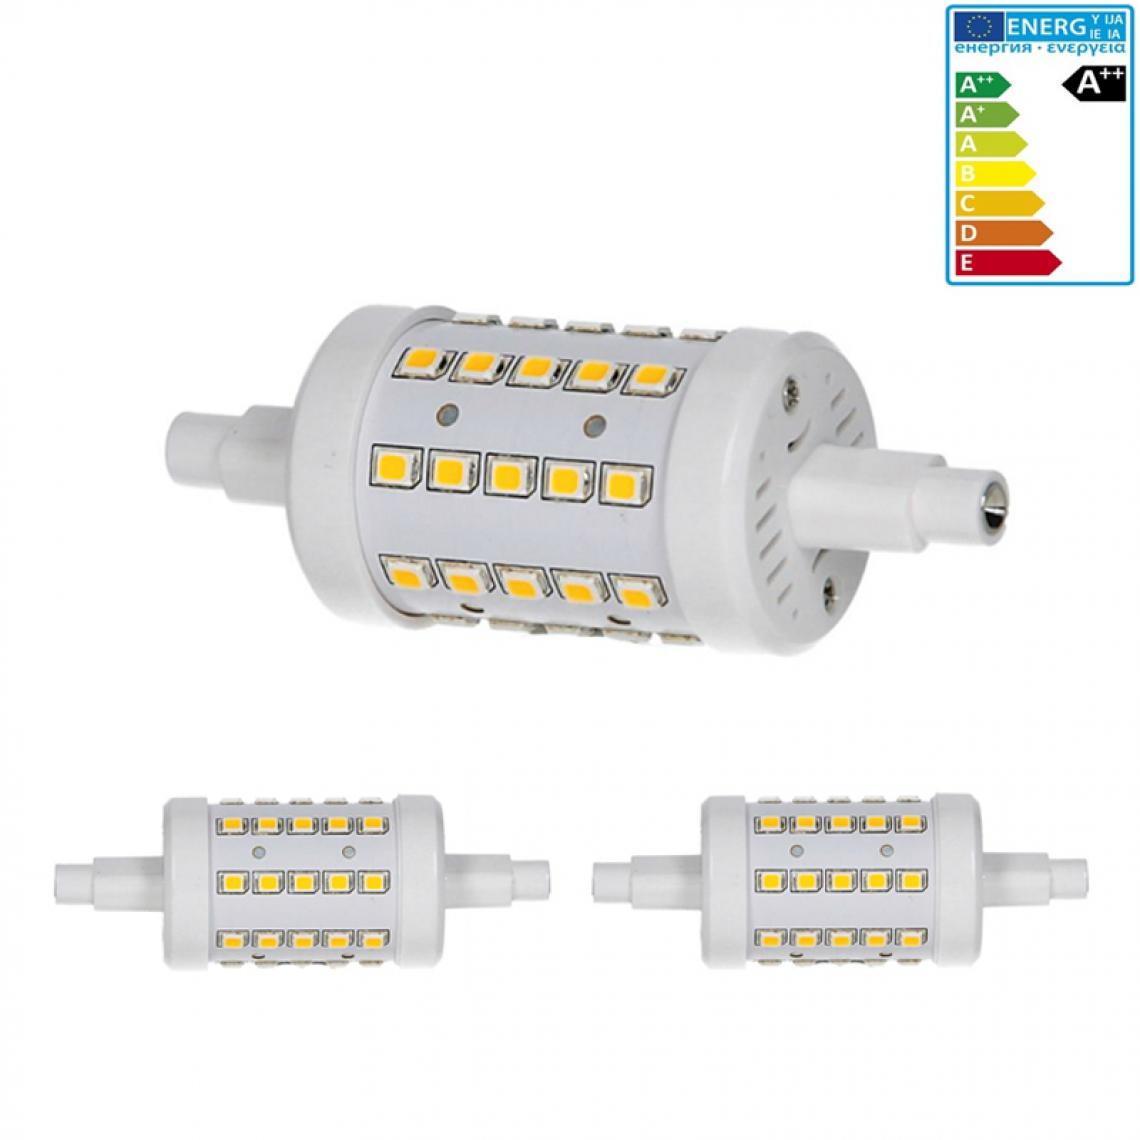 Ecd Germany - ECD Germany 2 x R7S Ampoule LED 7W 78mm 480 lumens angle de faisceau de mesure 360° AC 220-240 remplace 45W Ampoule halogène Blanc chaud réglable - Tubes et néons